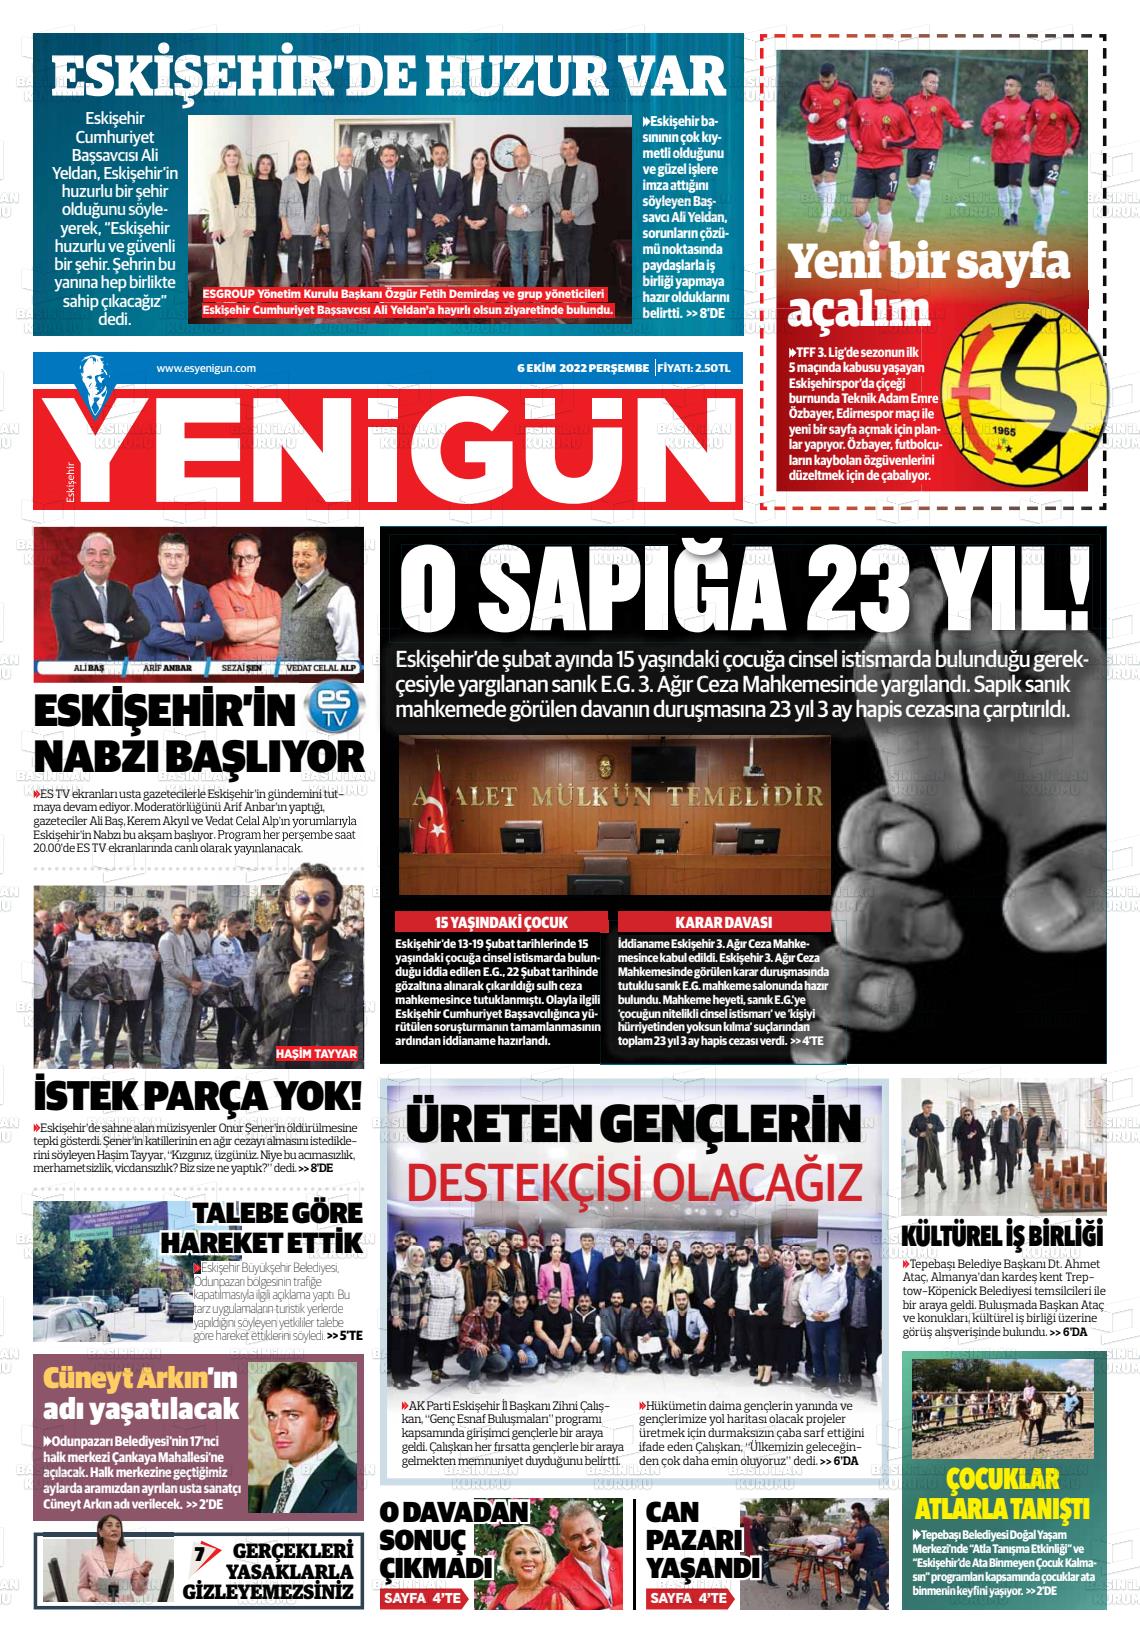 06 Ekim 2022 Eskişehir Yeni Gün Gazete Manşeti